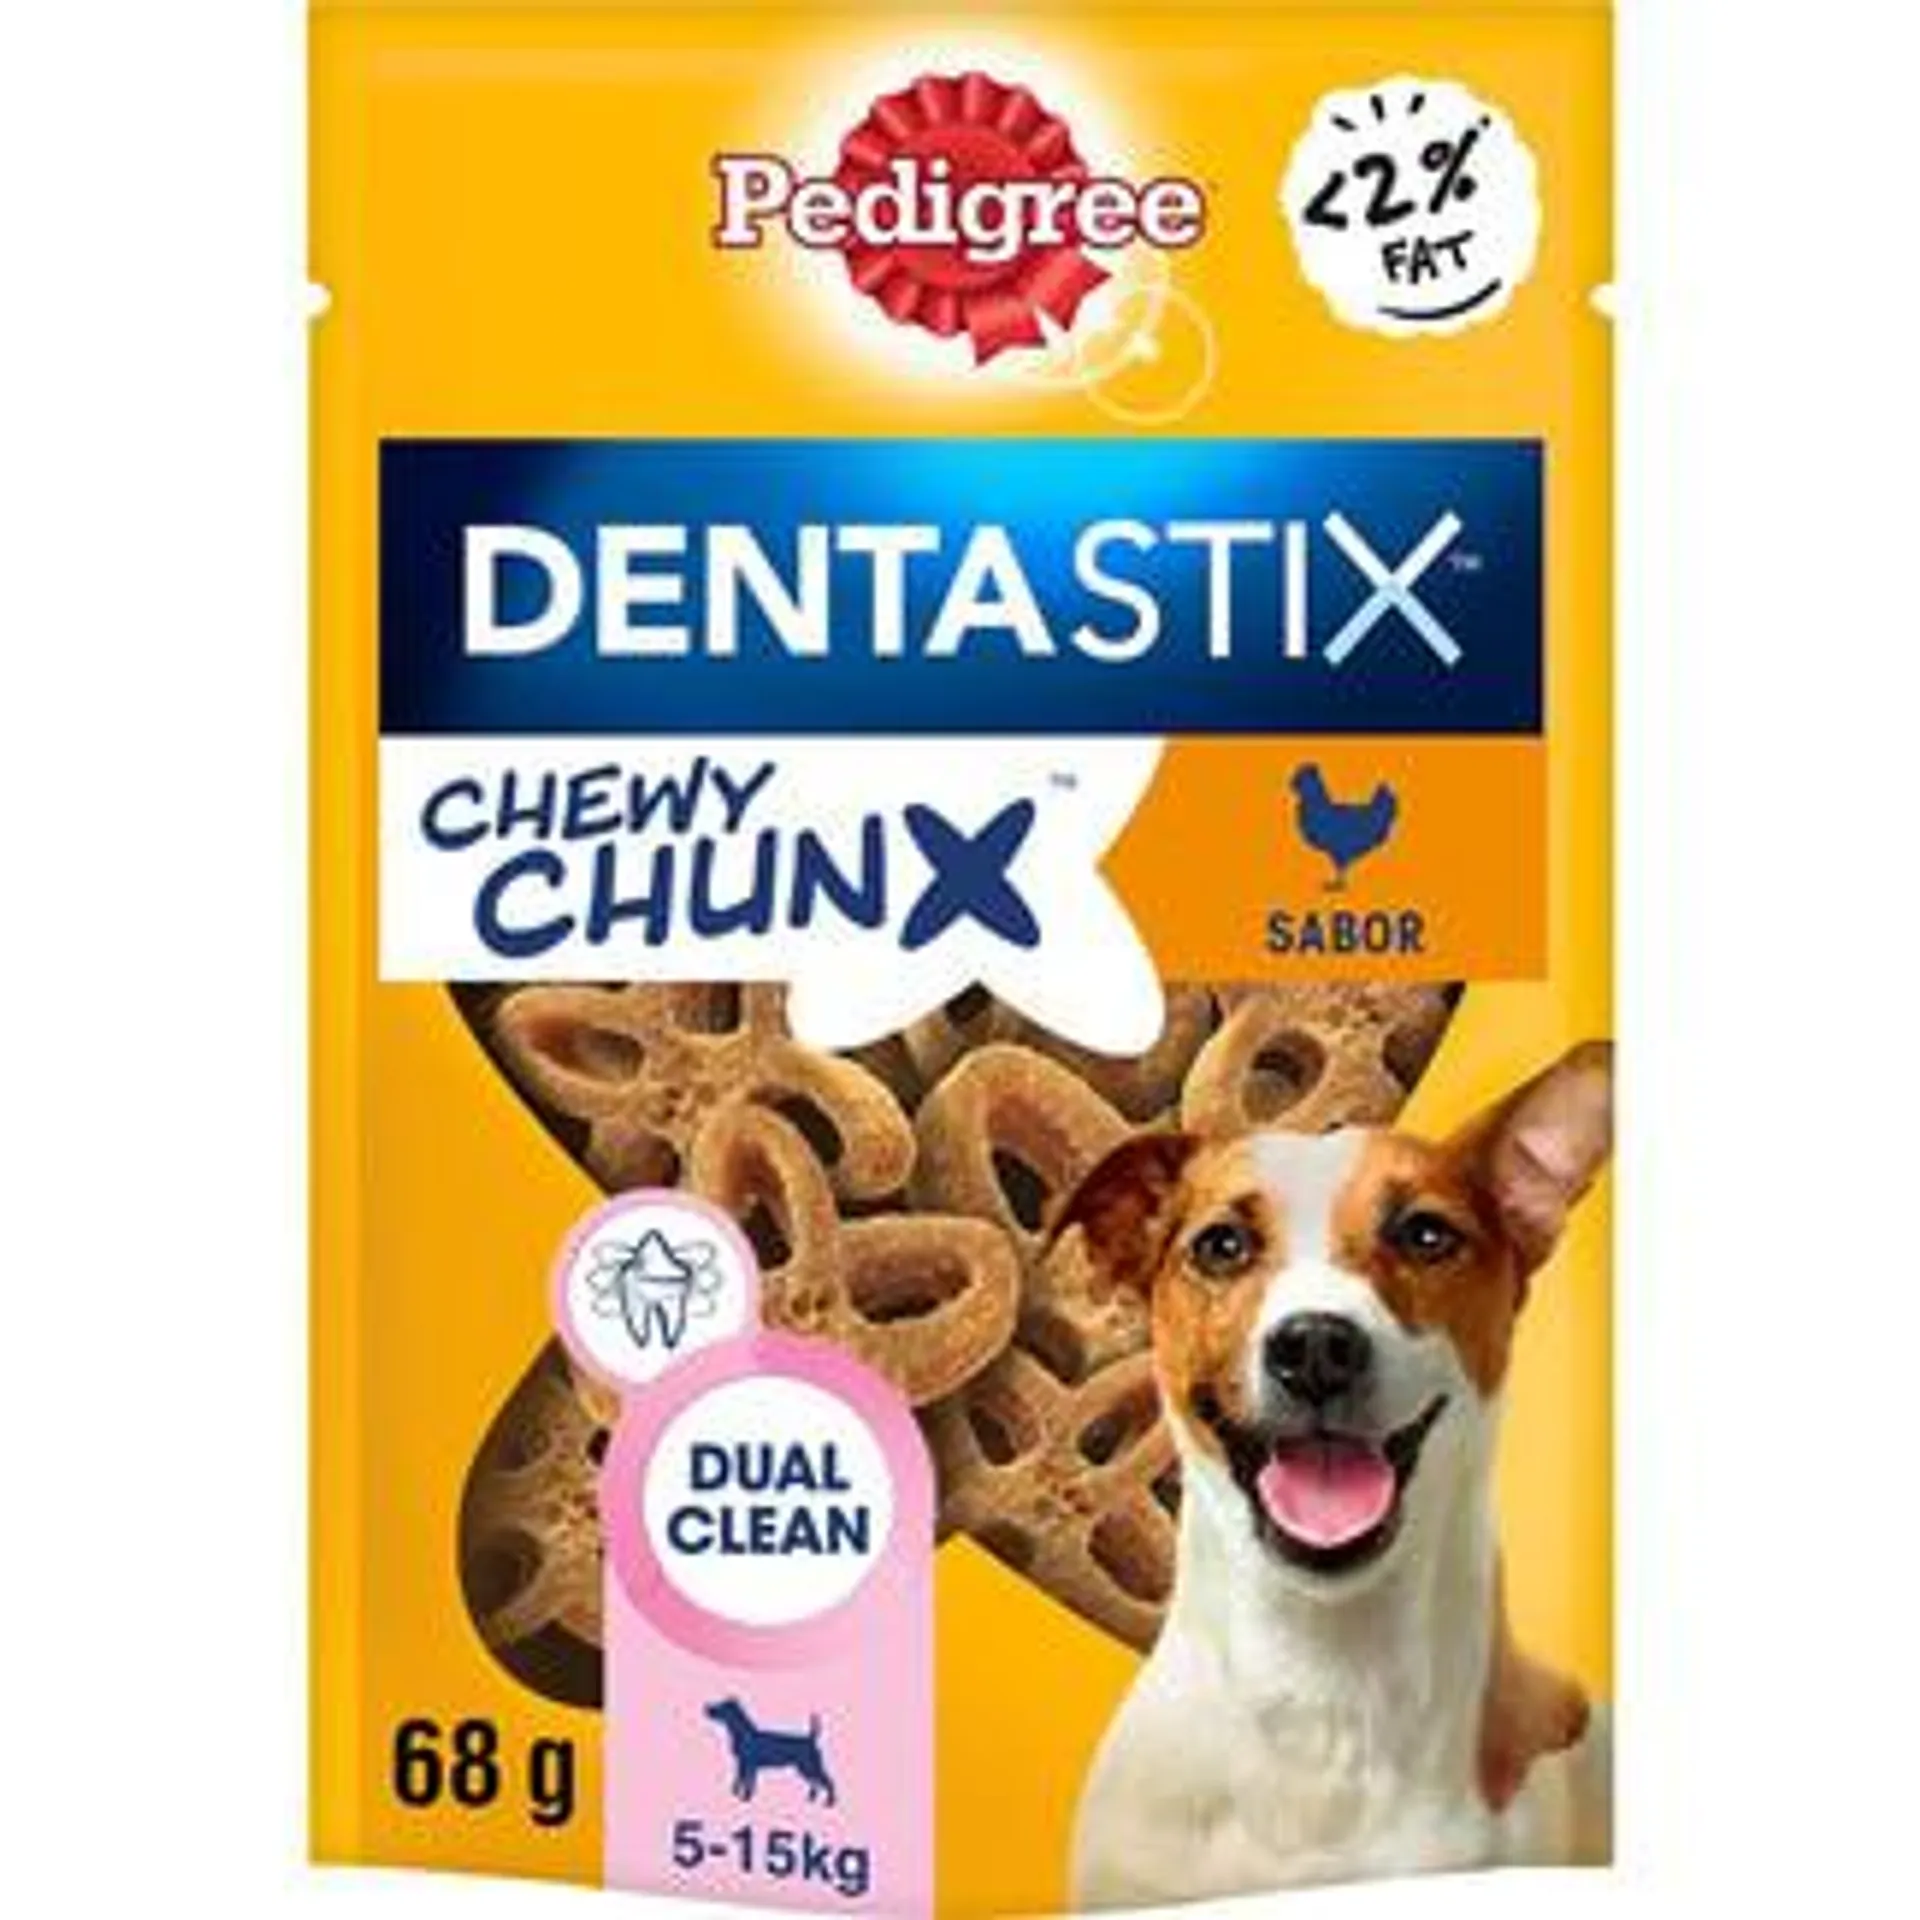 PEDIGREE Dentastix Chewy Chunx snacks dentales para perros de tamaño mediano con sabor a pollo envase 340 g